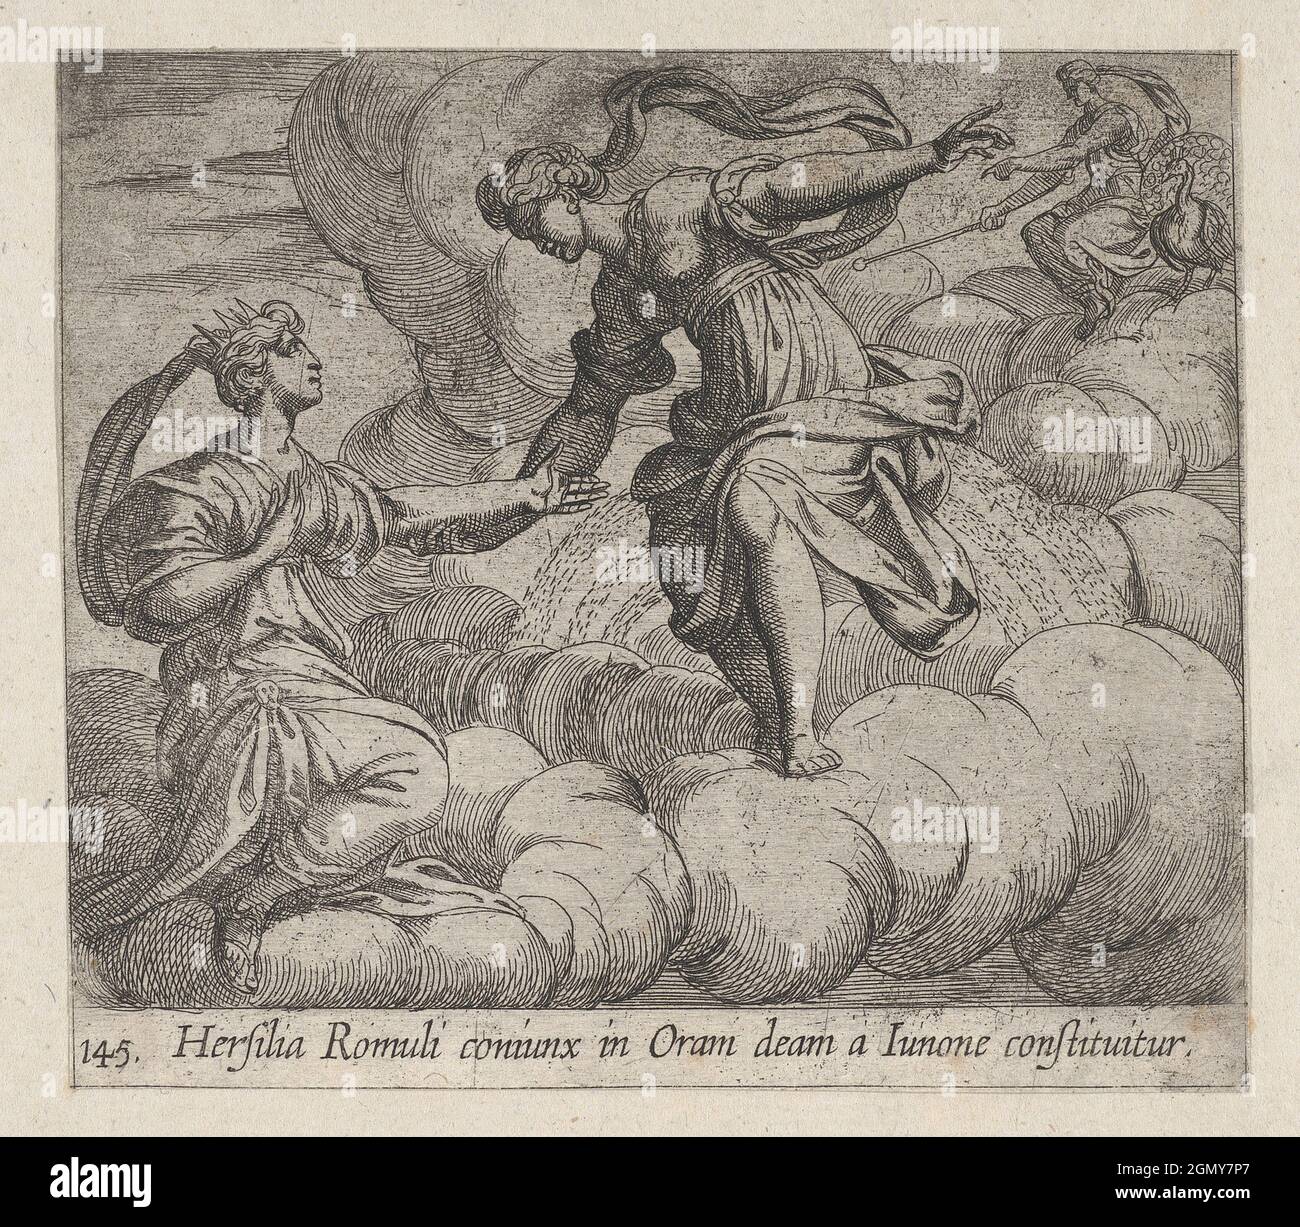 Targa 145: Hersilia portata in cielo (Hersilia Romuli coniunx in Oram deam a Iunone costituitur), dai 'Metamorphoses' di Ovidio. Artista: Antonio Foto Stock